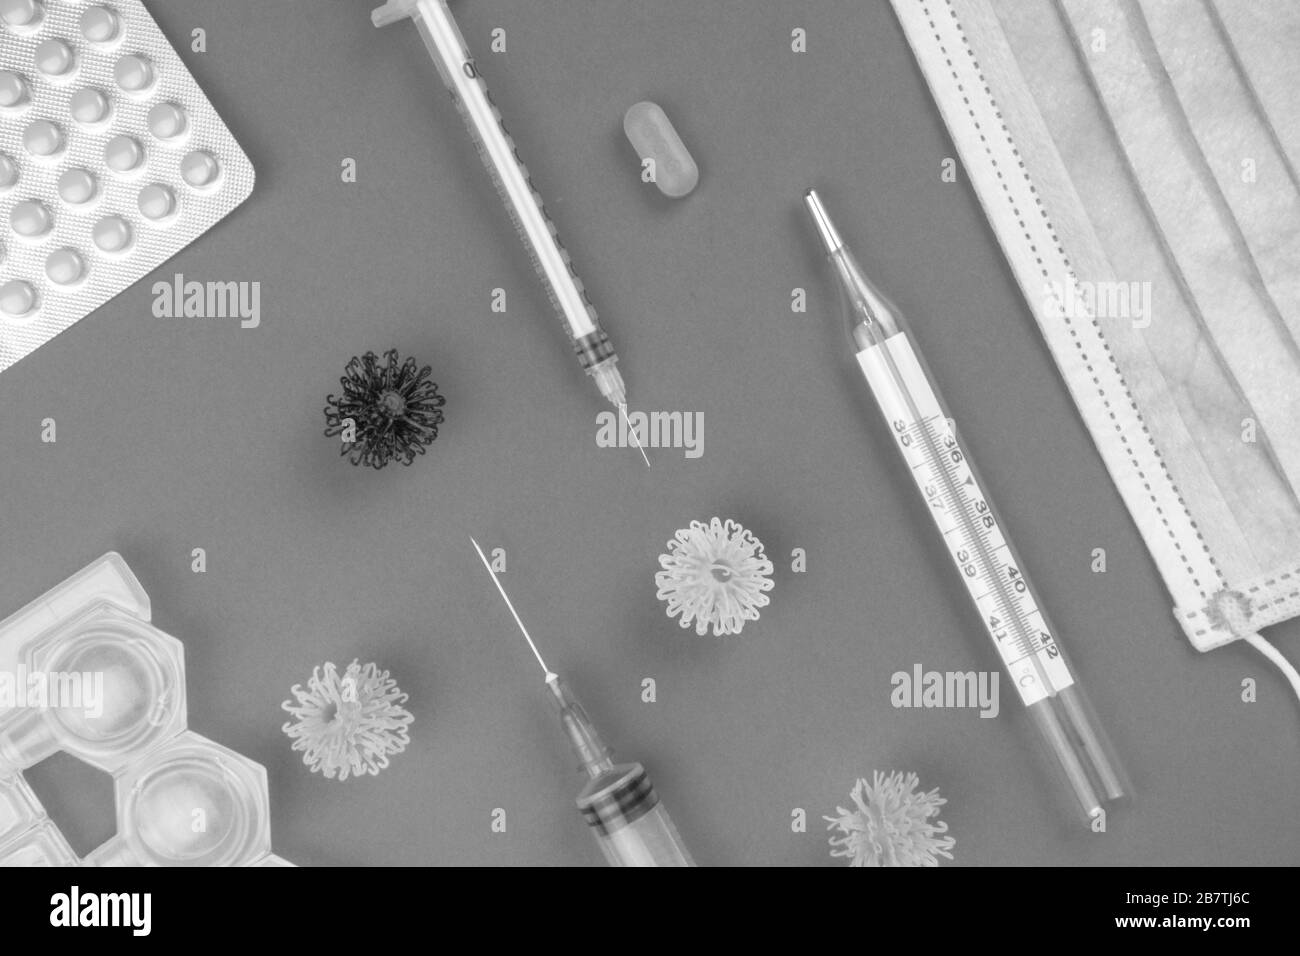 Medizinische Schutzmaske, Thermometer, Pillen, Natriumchlorid, Spritze und Viren, neuartiges Coronavirus - 2019-nCoV. Gesundheitsversorgung zur Unterstützung der Genesung von coro Stockfoto